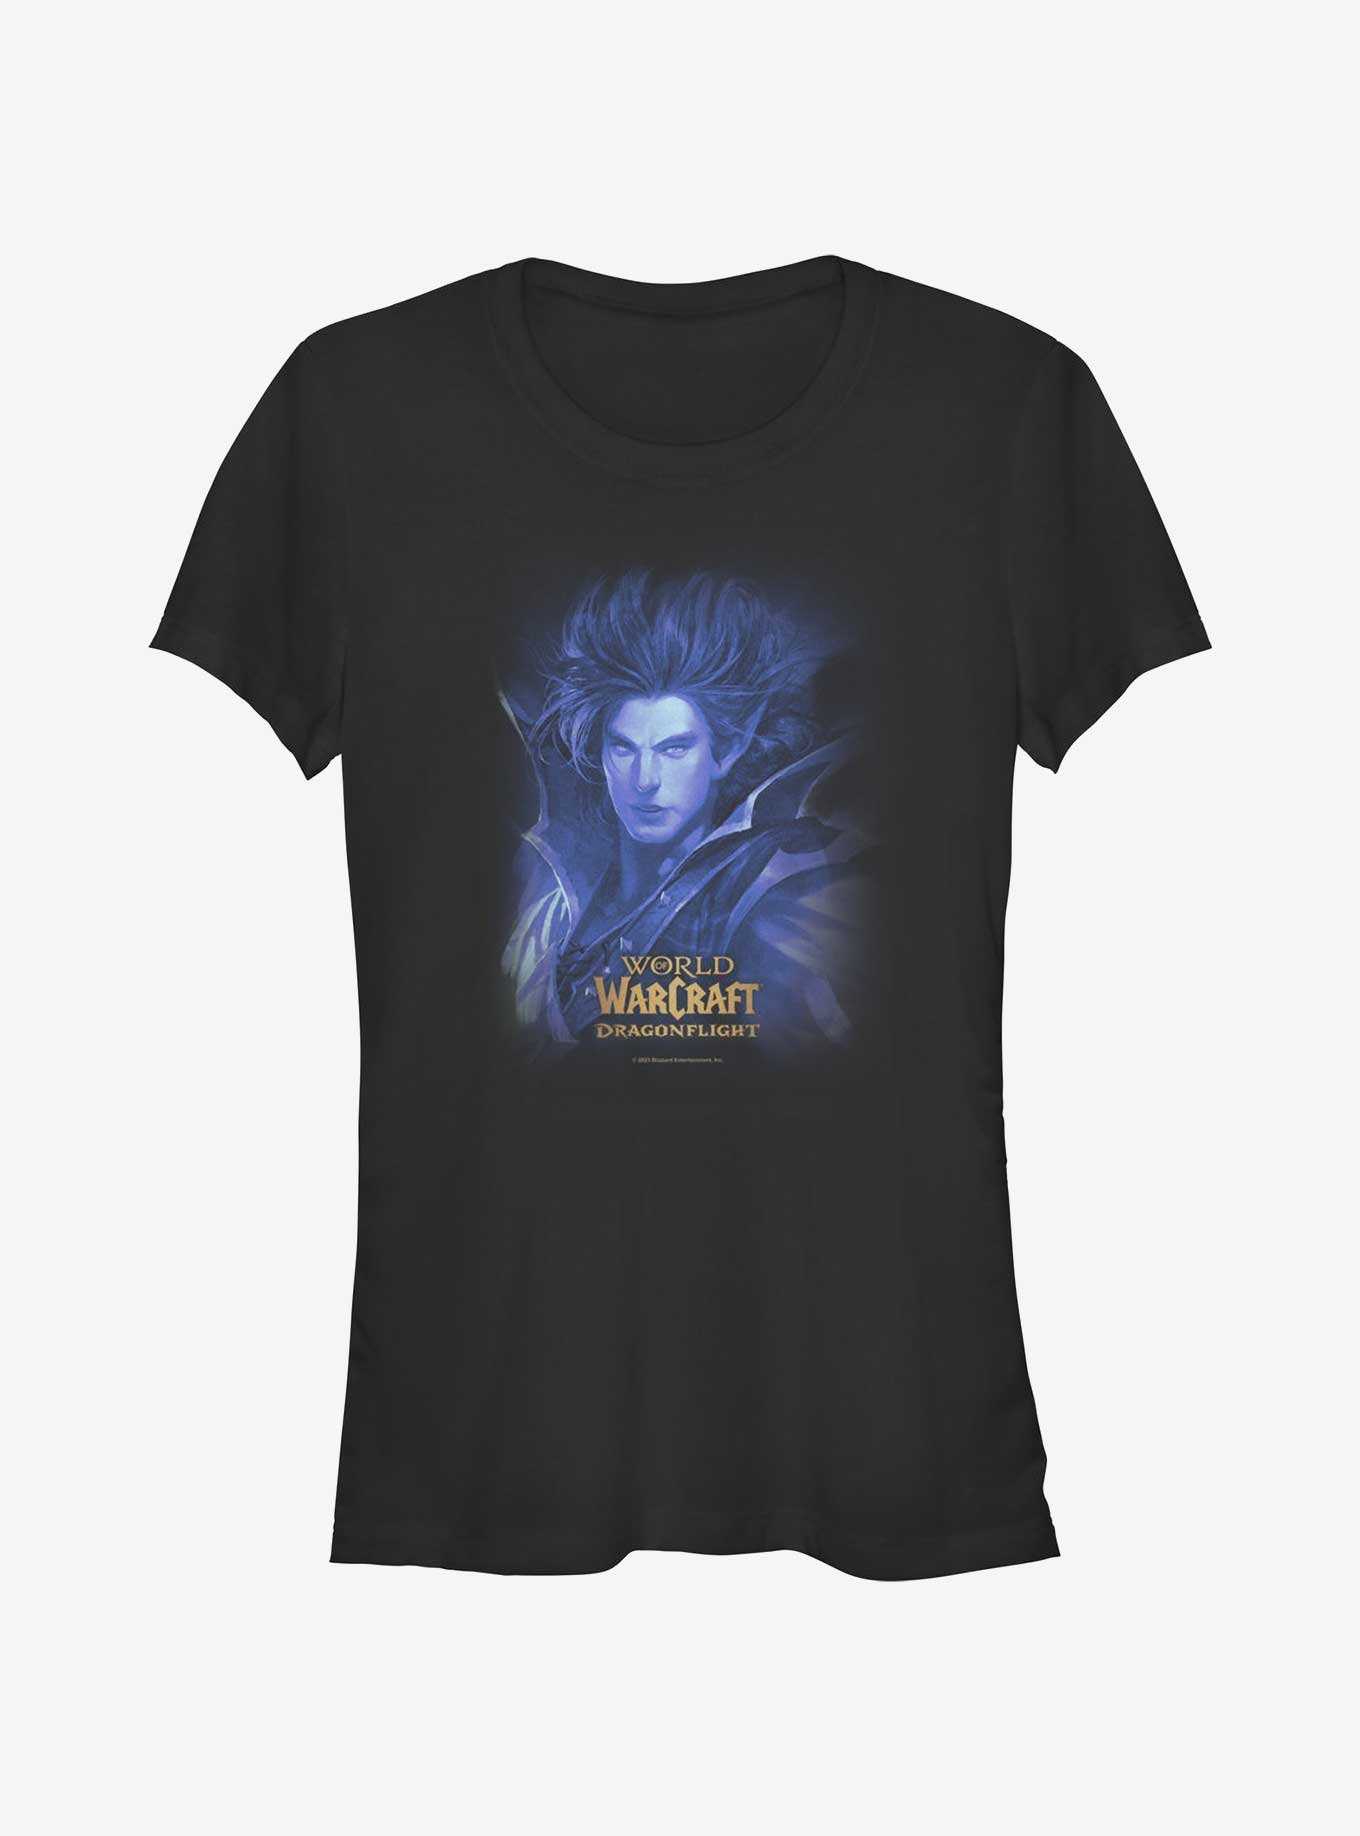 World Of Warcraft Kalecgos Ocean Girls T-Shirt, , hi-res